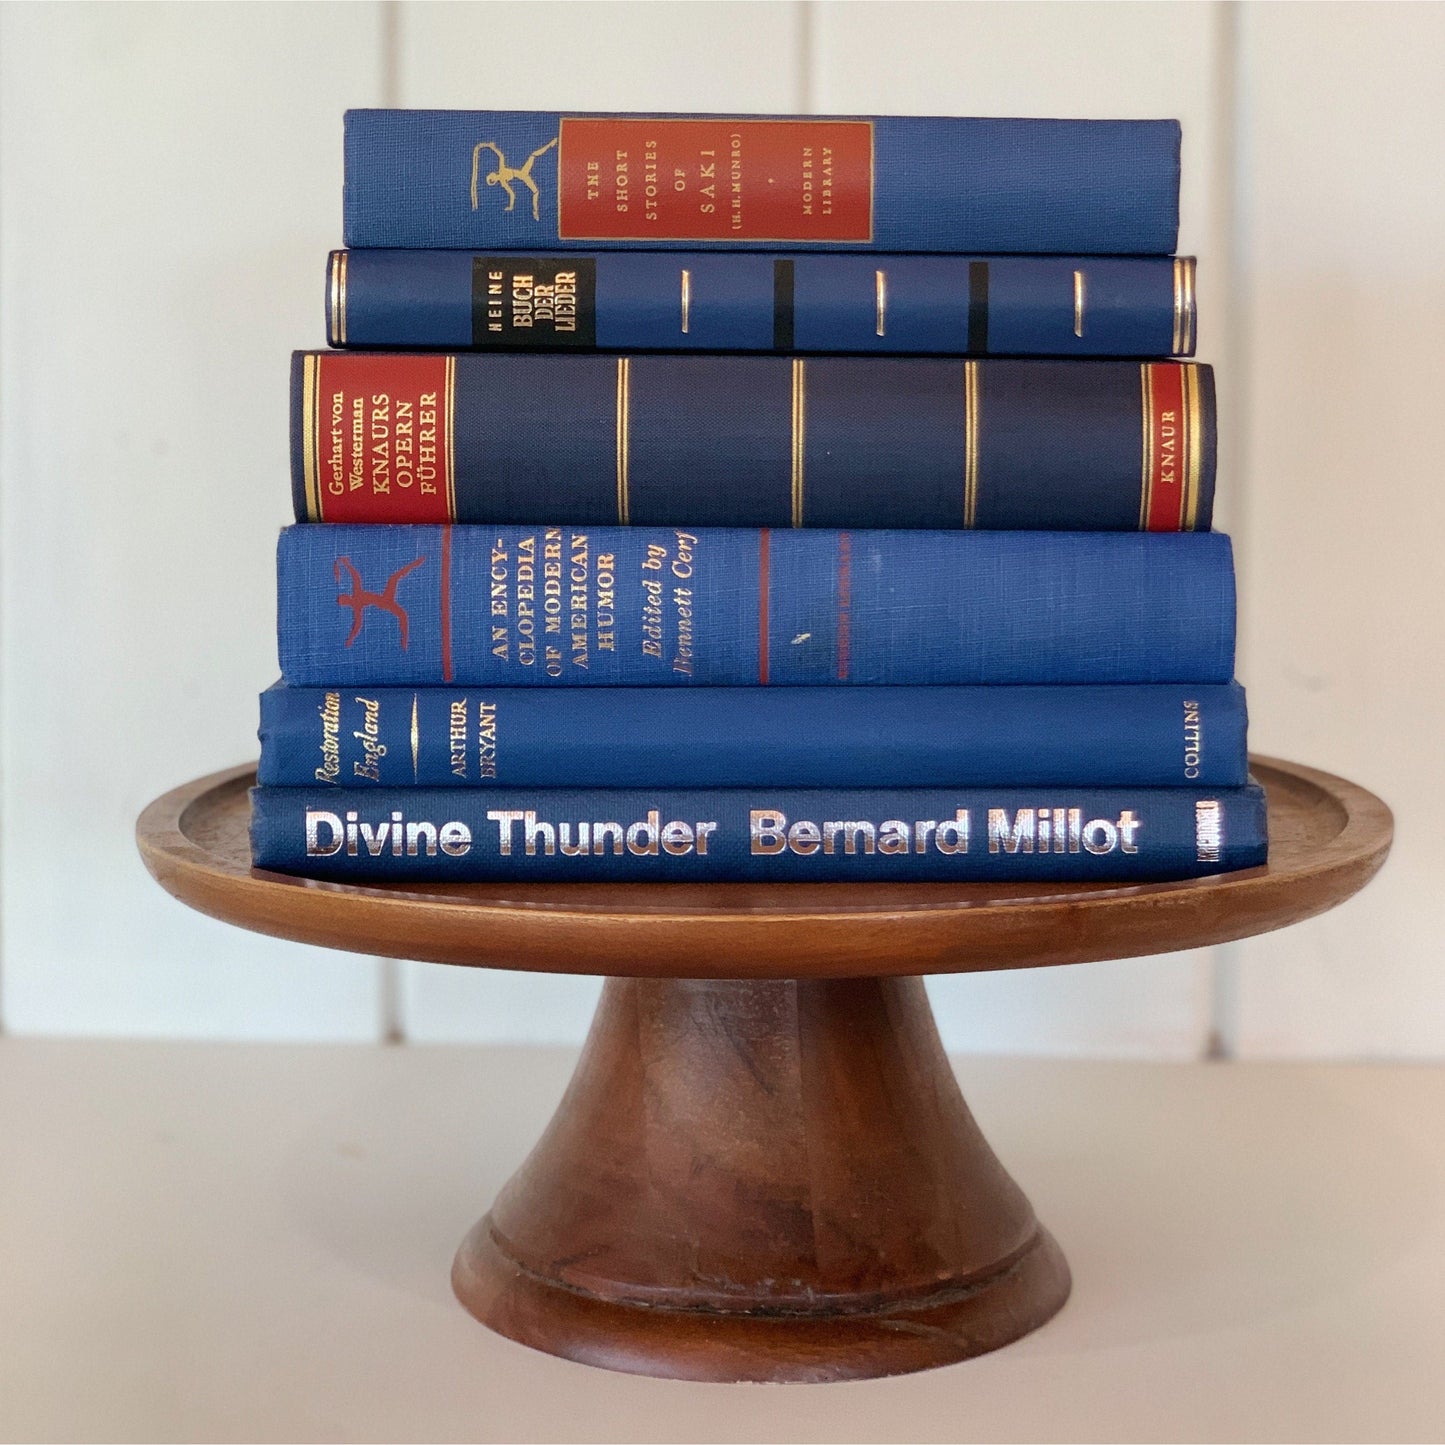 Indigo Blue Vintage Book Set, Home Staging, Boho Decor, Books for Wedding Centerpiece